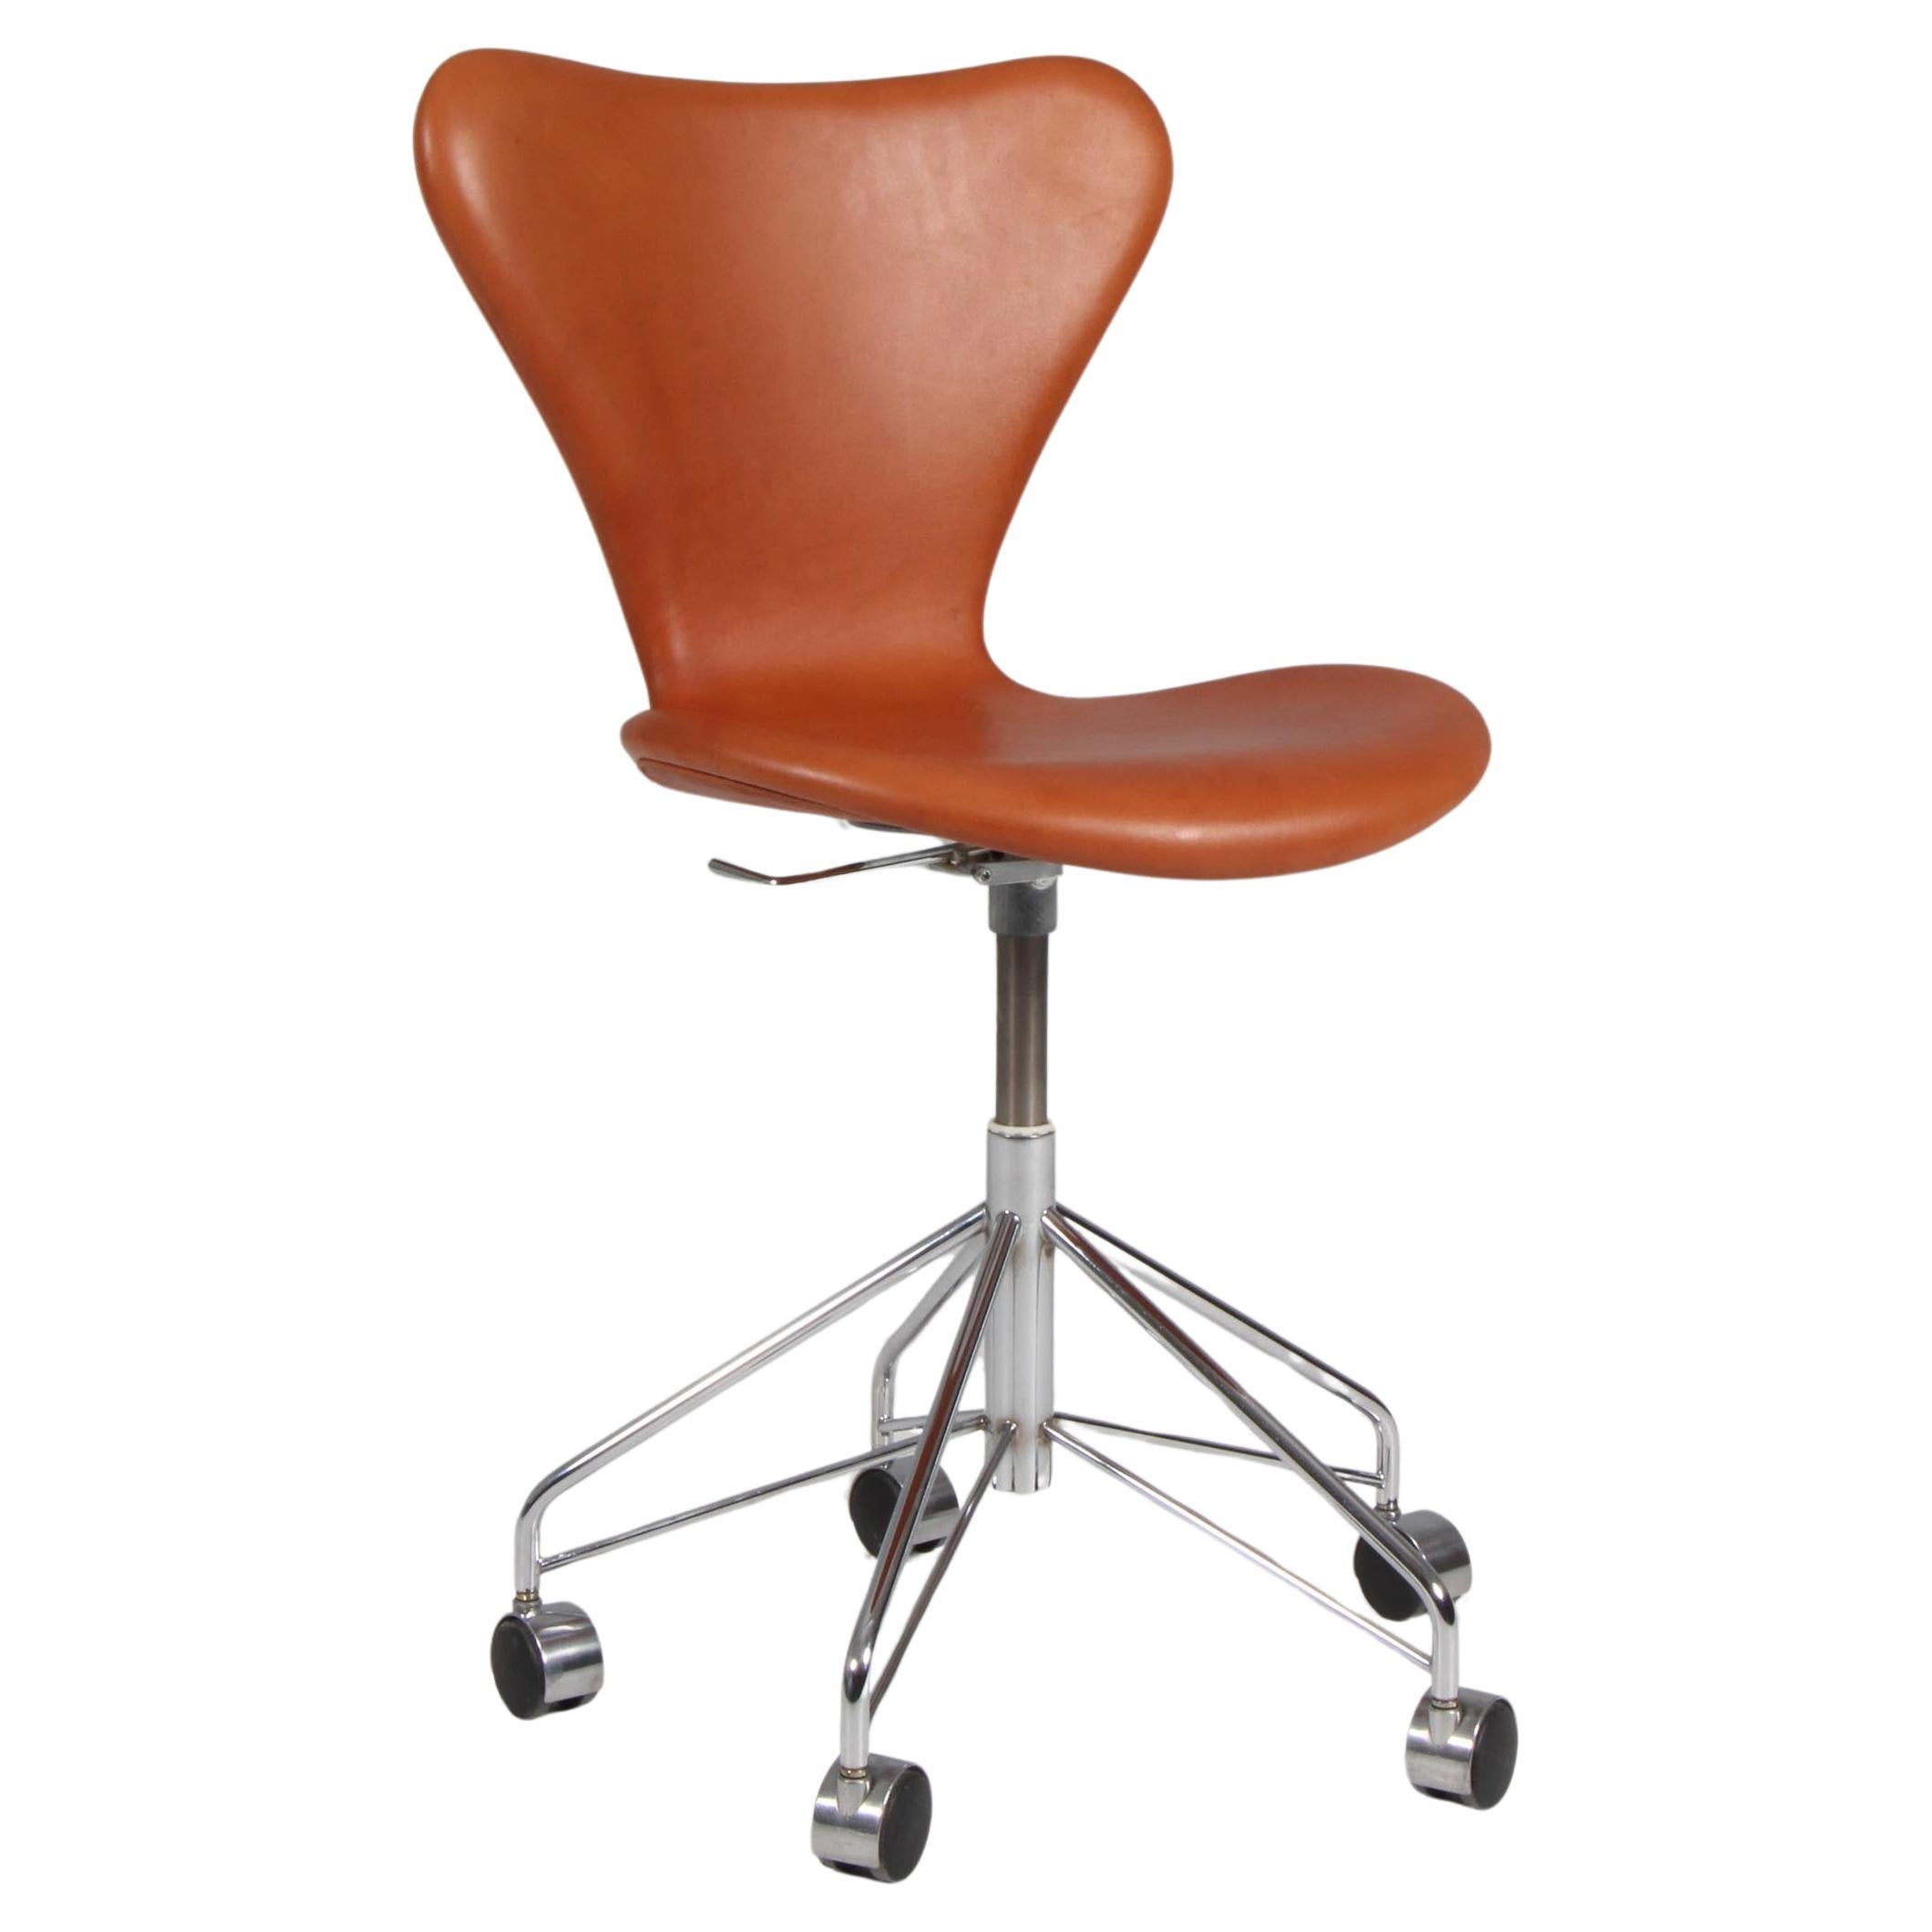 Chaise de bureau Arne Jacobsen, modèle « Syveren » 3107, cuir aniline cognac